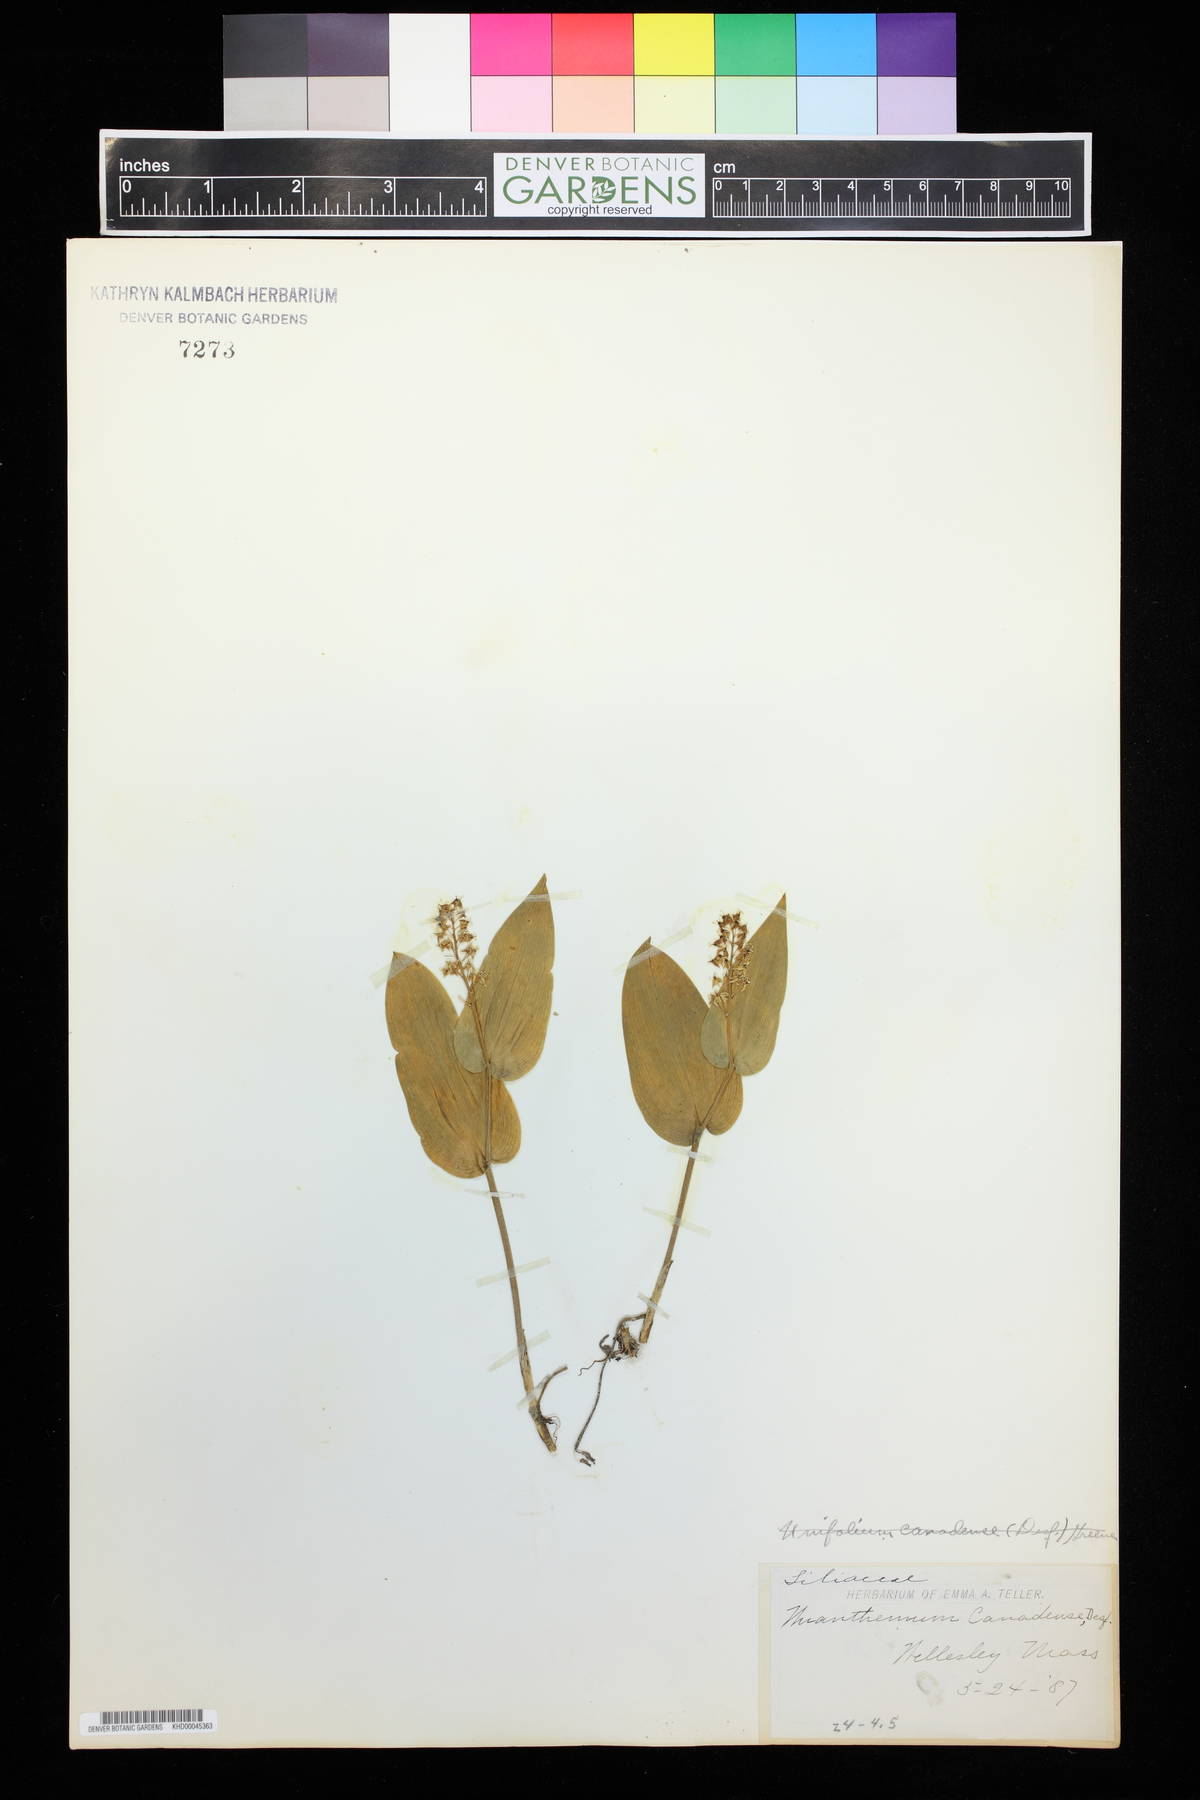 Unifolium image